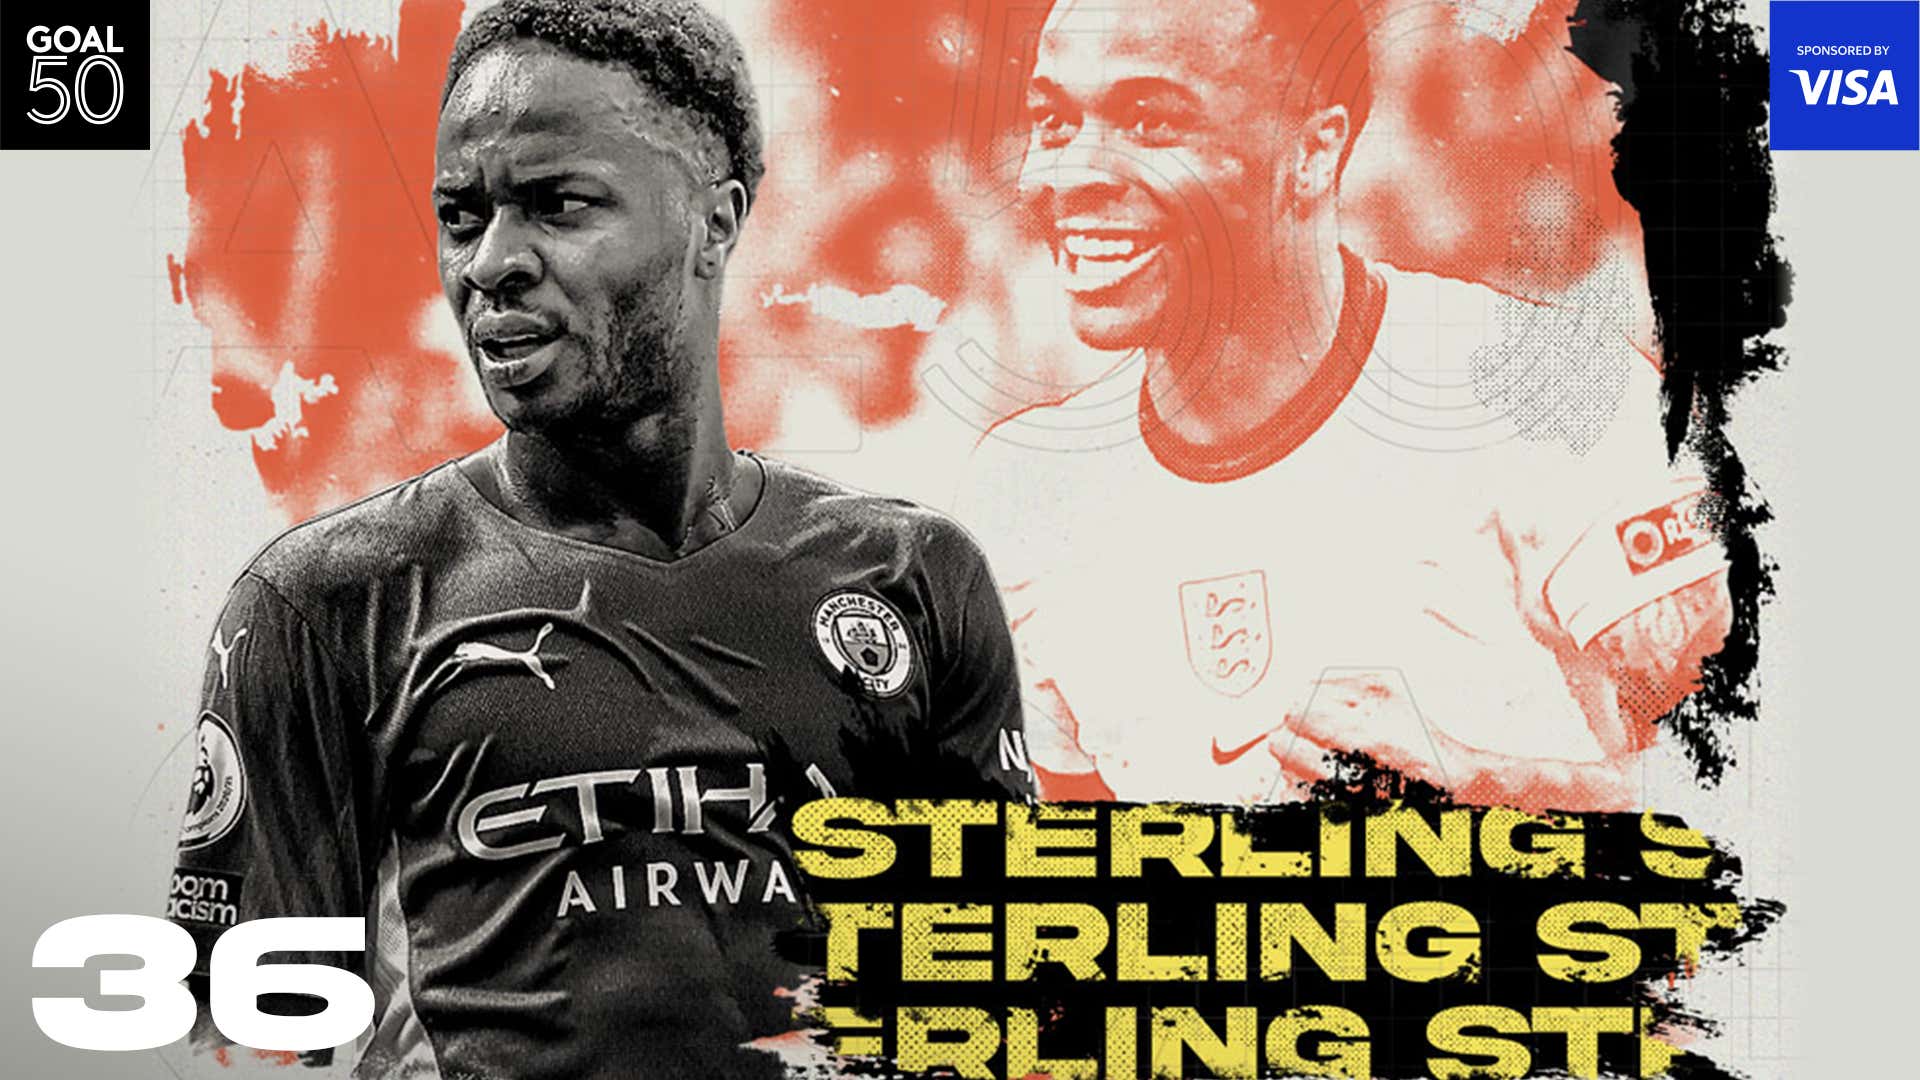 Sterling Goal50 2021